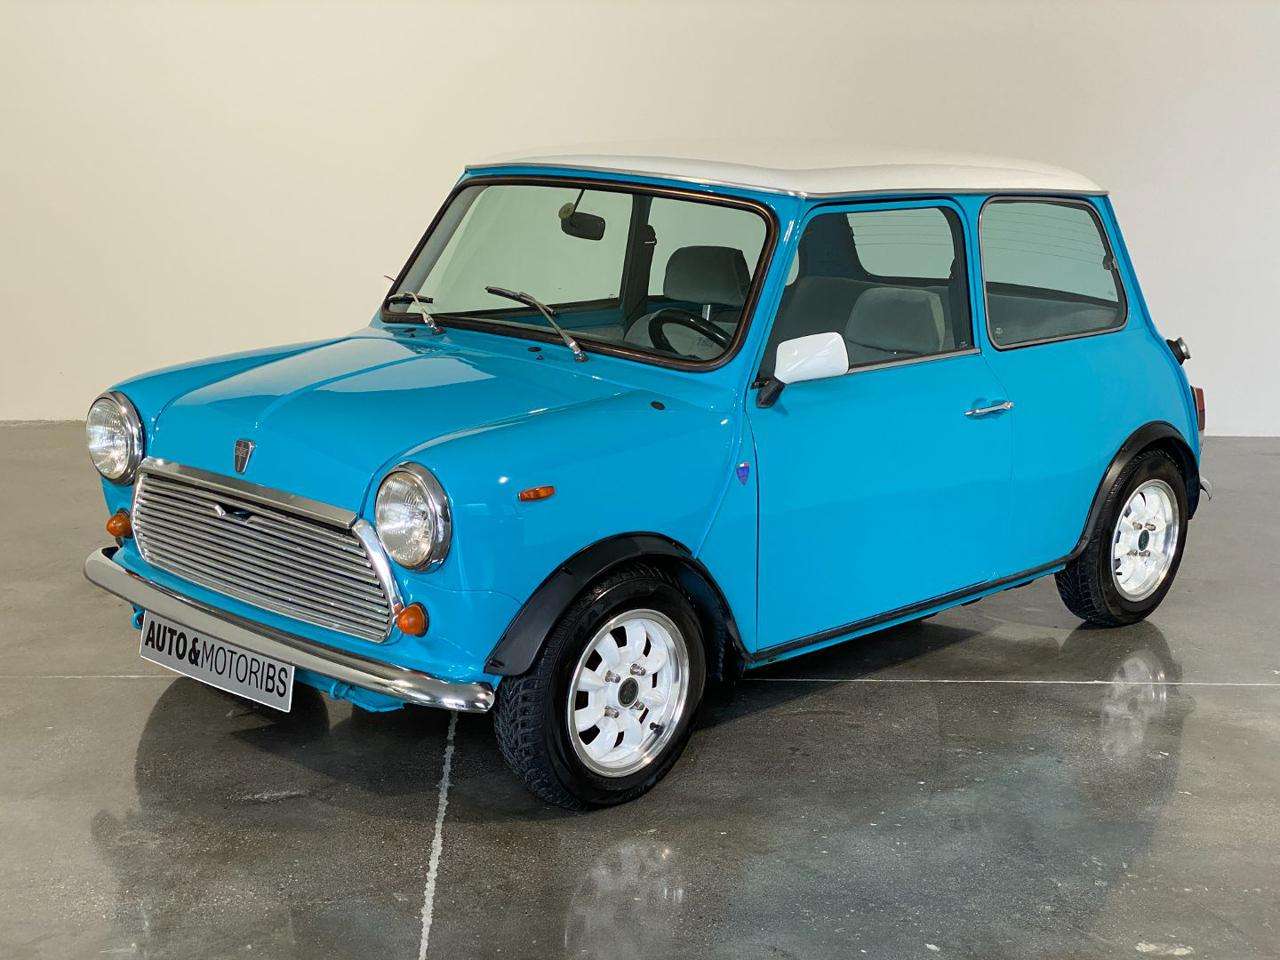 Austin Mini Moke Compact in Blue used in Concesio - Brescia - BS for € 8,700.-